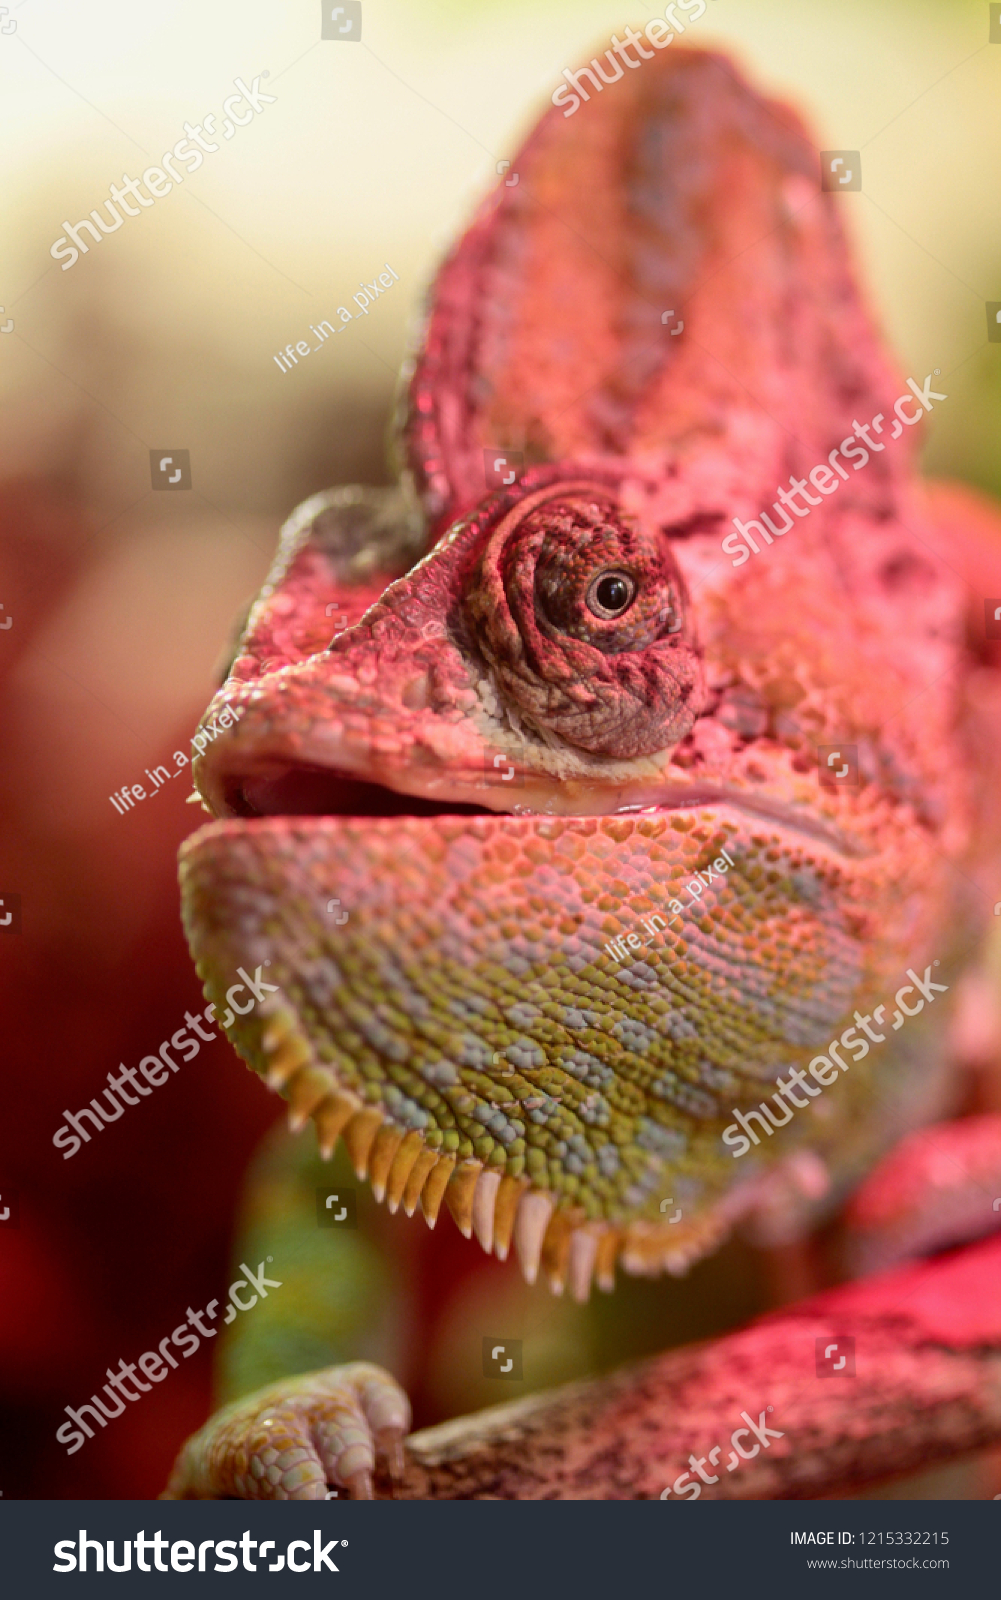 Chameleon changing color #1215332215